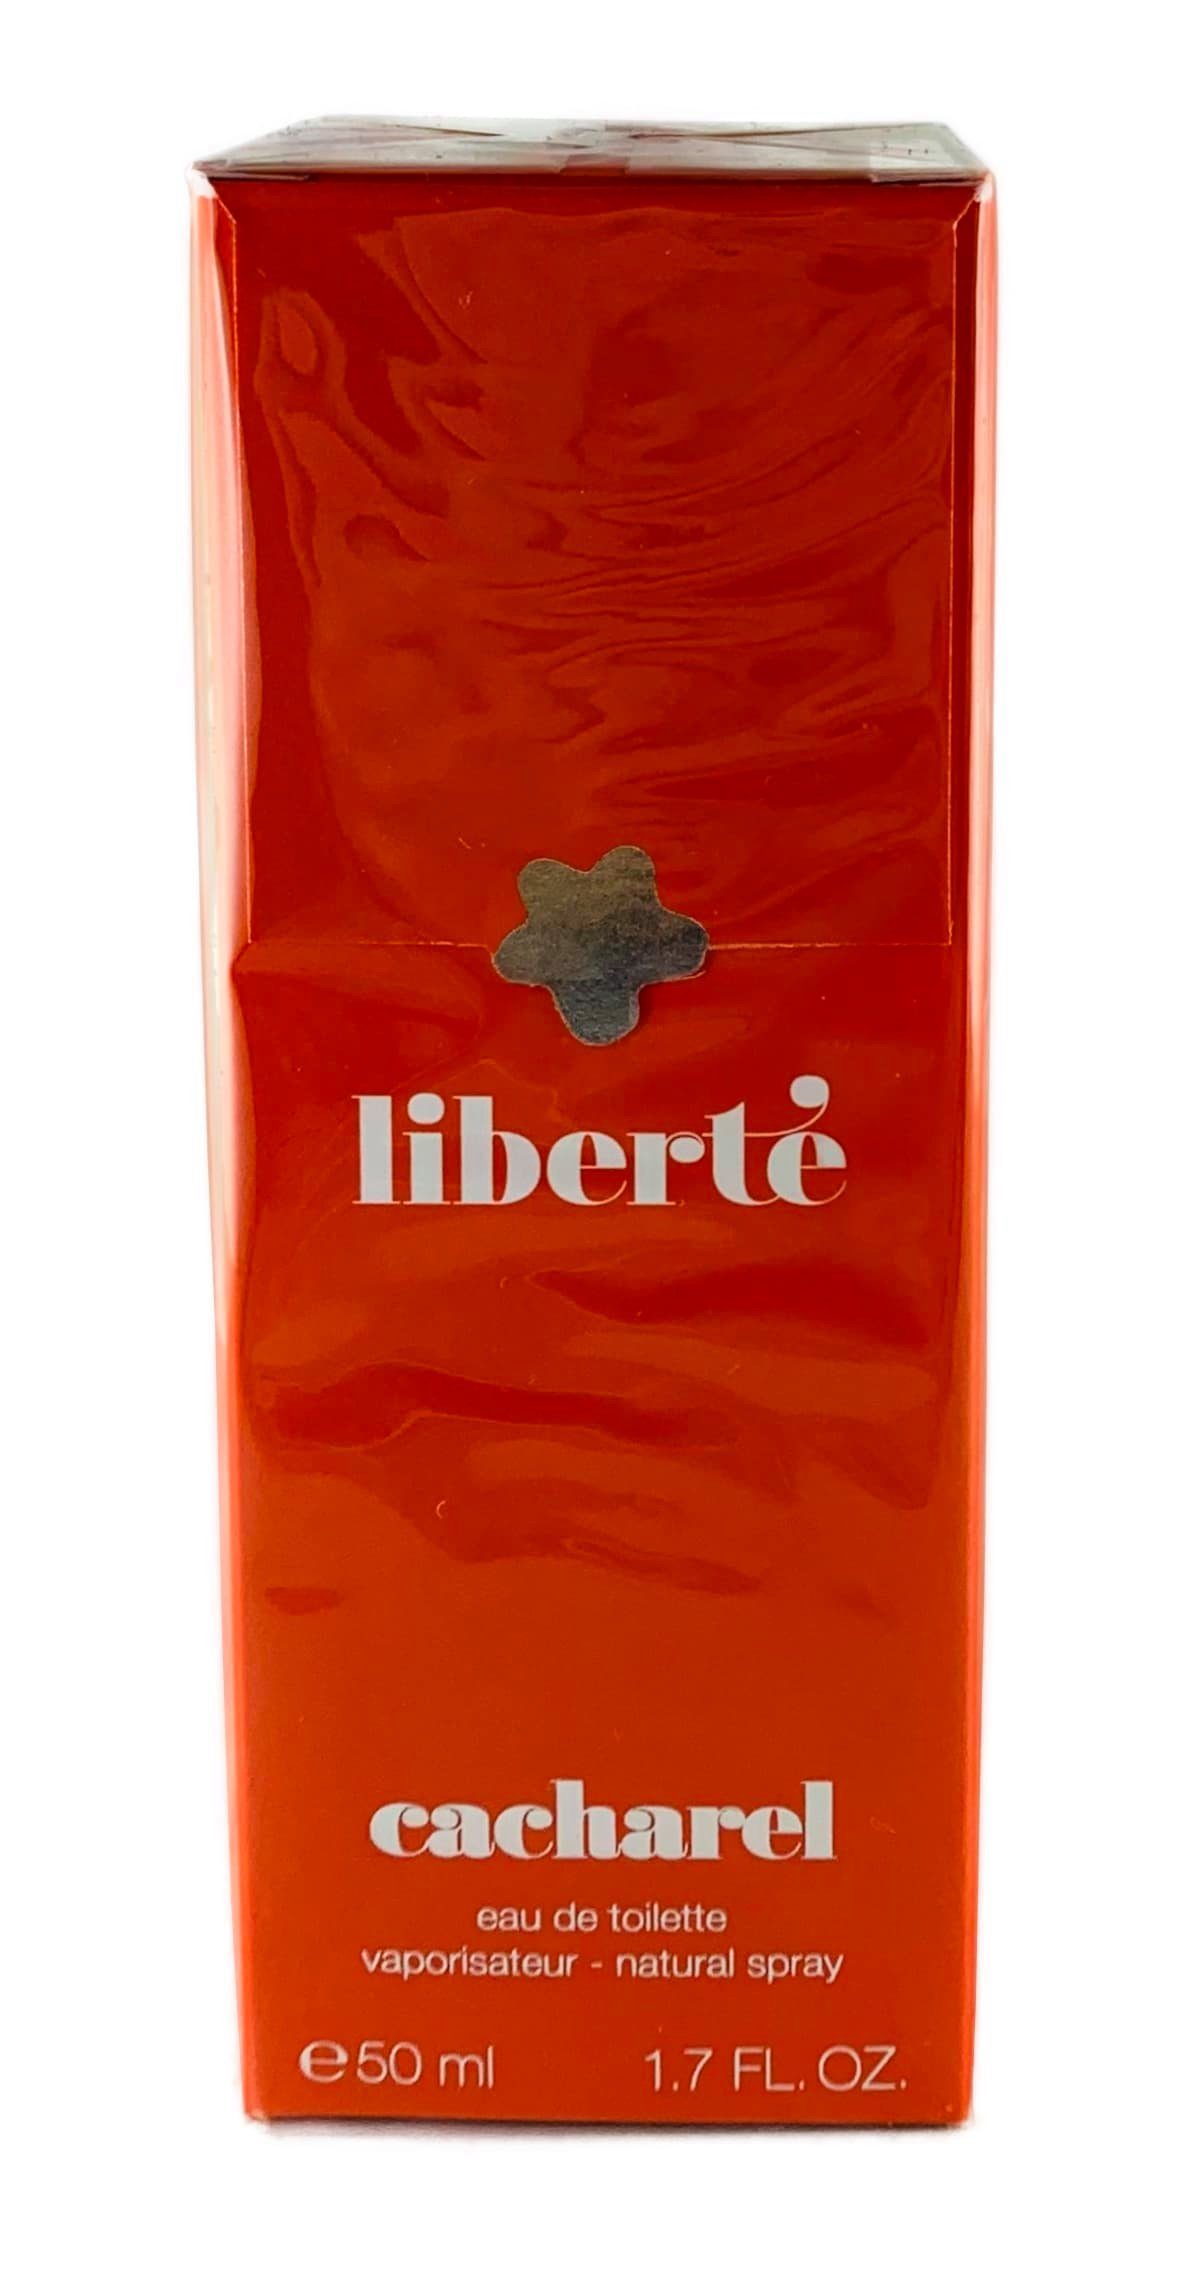 CACHAREL Eau de Toilette Cacharel Liberté Eau de Toilette Spray 50 ml